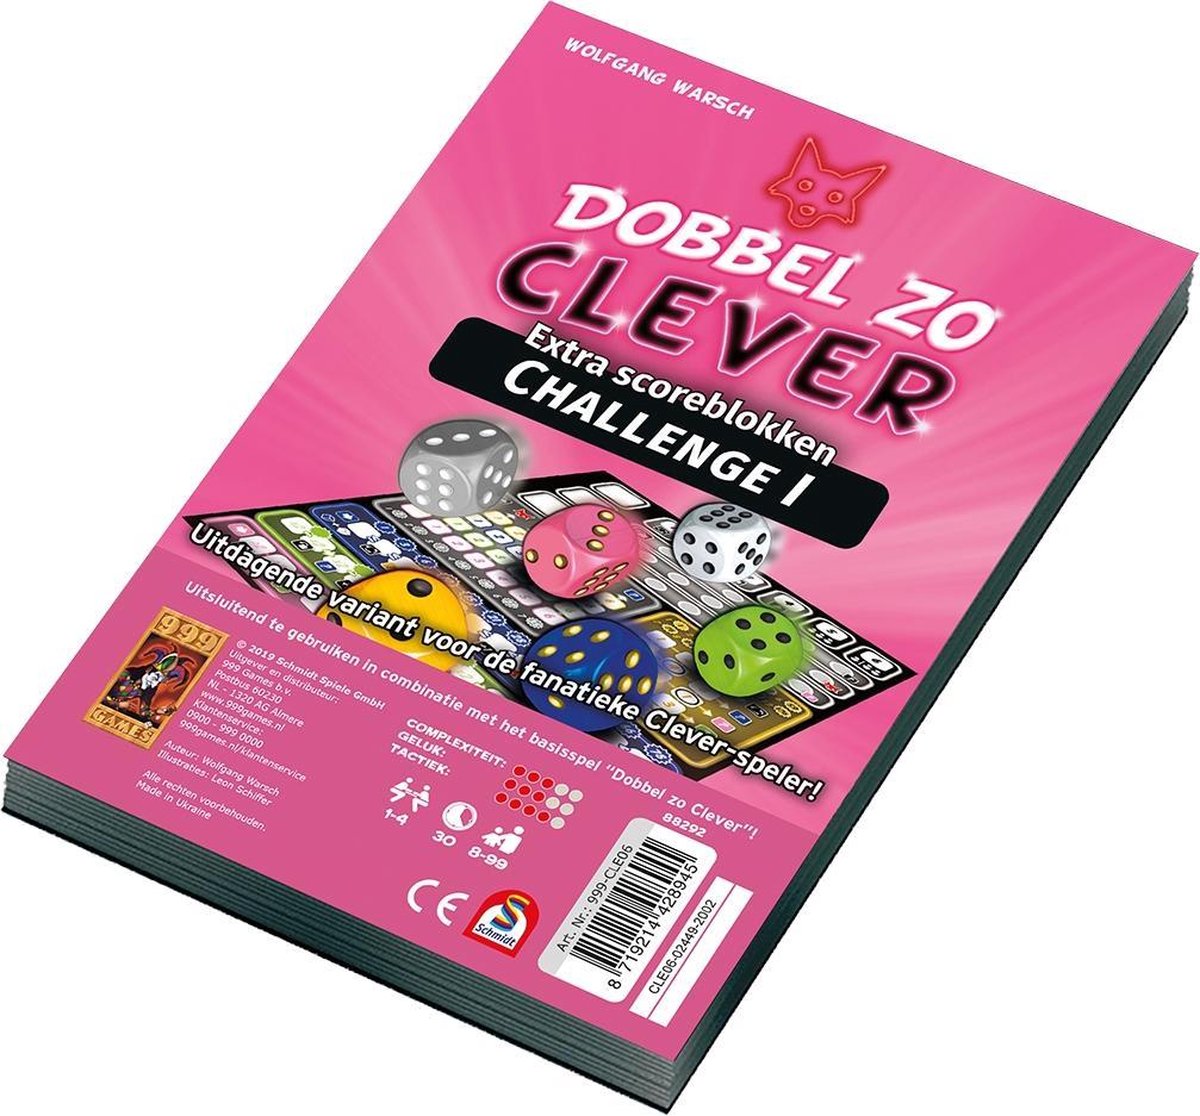   Games Dobbel zo Clever Challenge Scoreblok